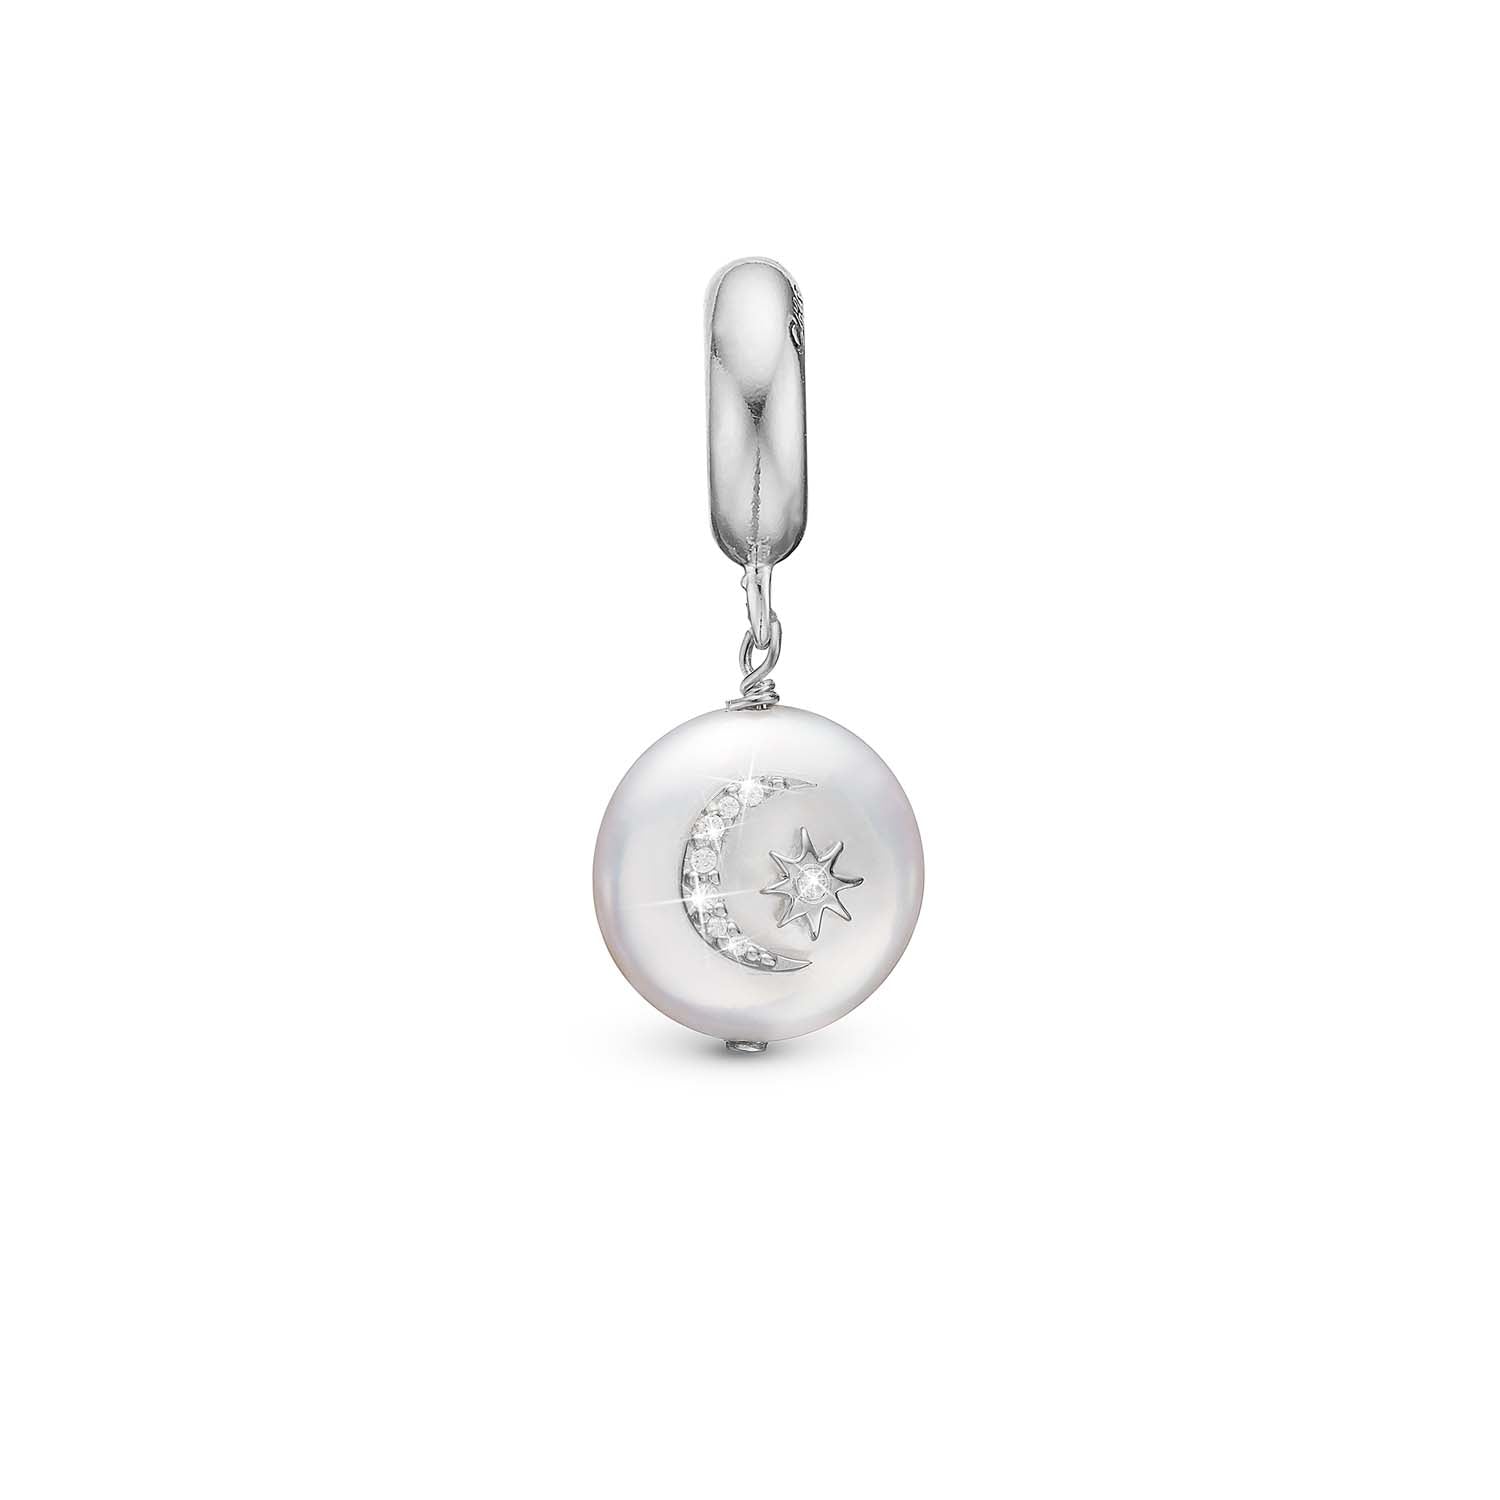 Billede af Christina Design London Jewelry & Watches - Sun Moon charm, 4 mm Sterlingsølv